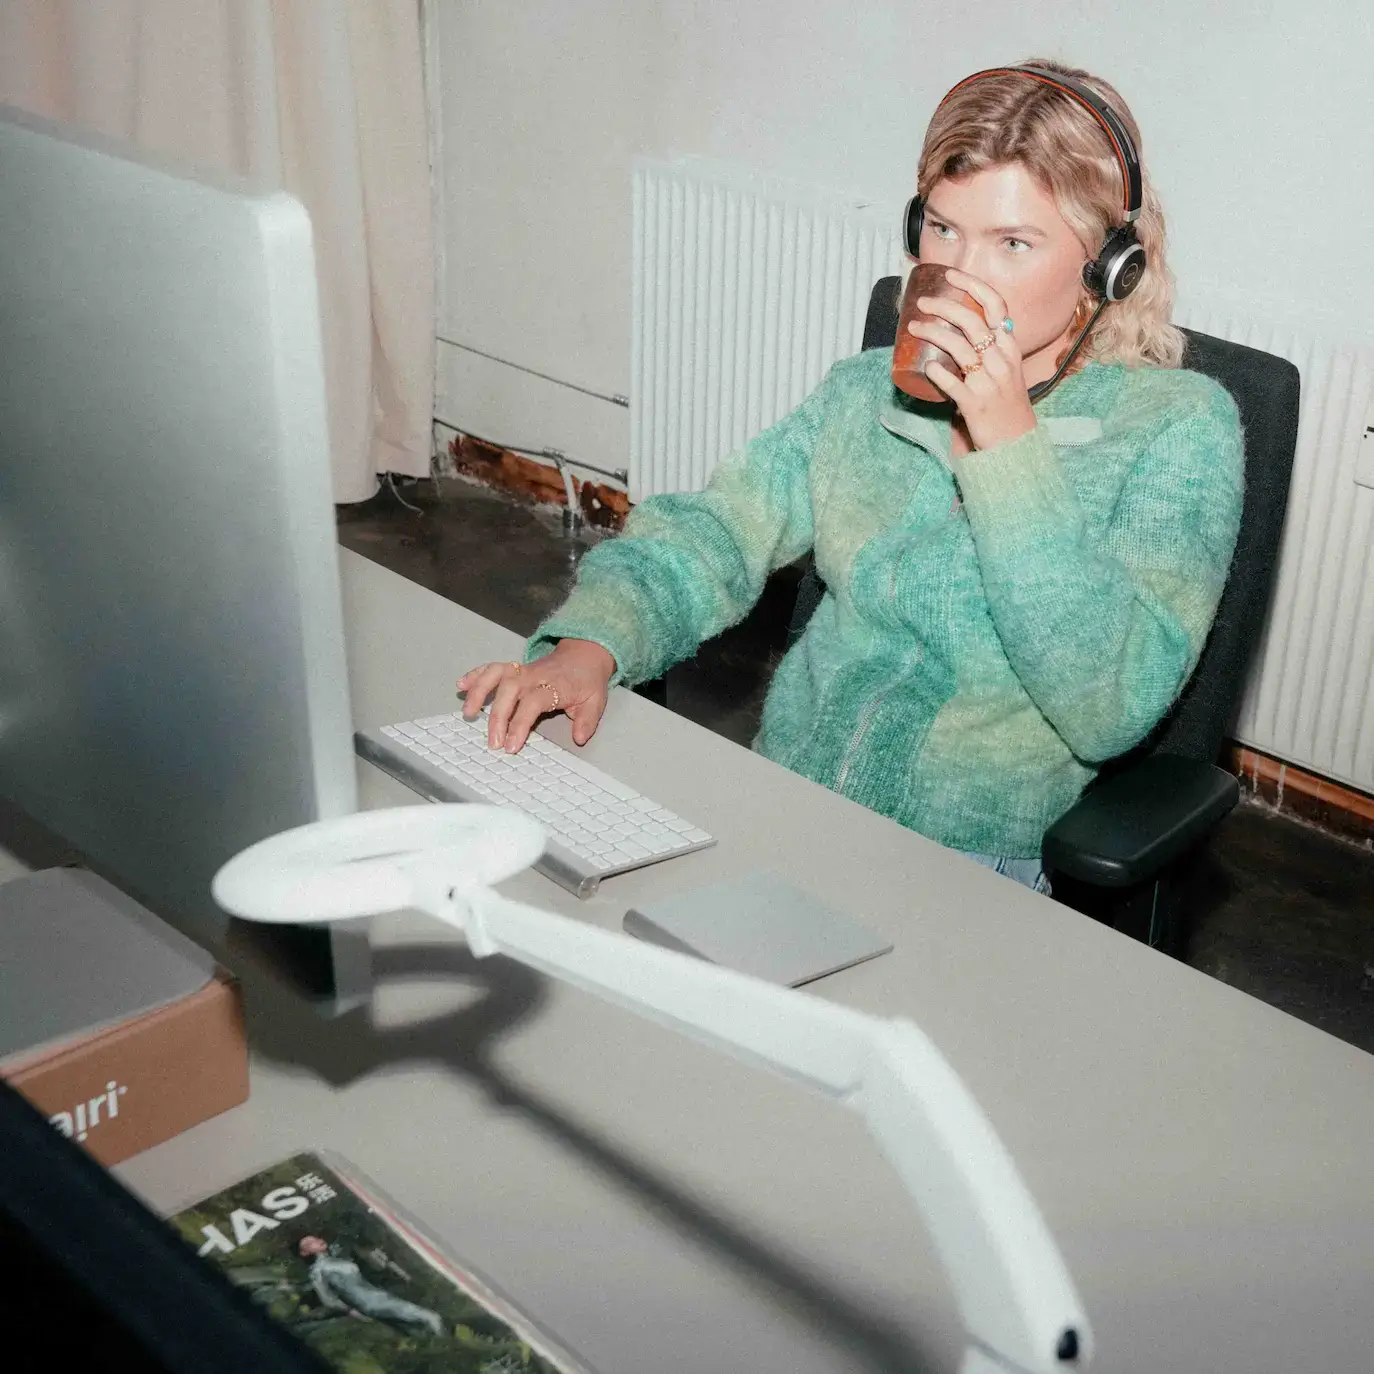 En kvinde i grøn sweater sidder med headset og besvarer kundehenvendelser på computer. Hun drikker en kop kaffe og sidder afslappet og fokuseret.